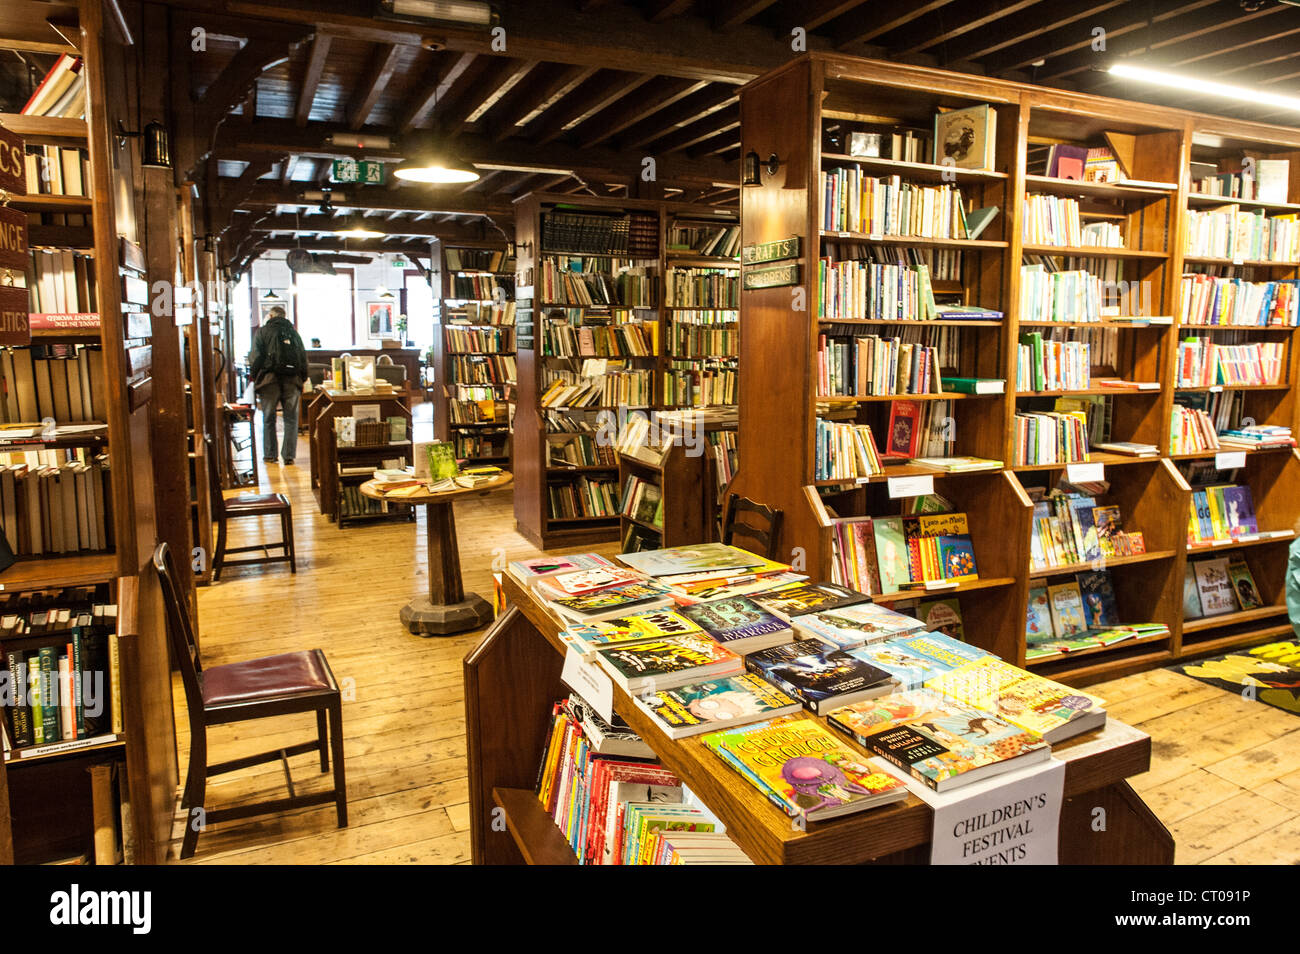 HAY-on-Wye, au Pays de Galles - à l'intérieur de l'une des librairies à Hay-on-Wye dans l'Est du pays de Galles. Décrite comme 'la ville de livres", il accueille chaque année un festival littéraire connu sous le nom de Hay Festival. Banque D'Images